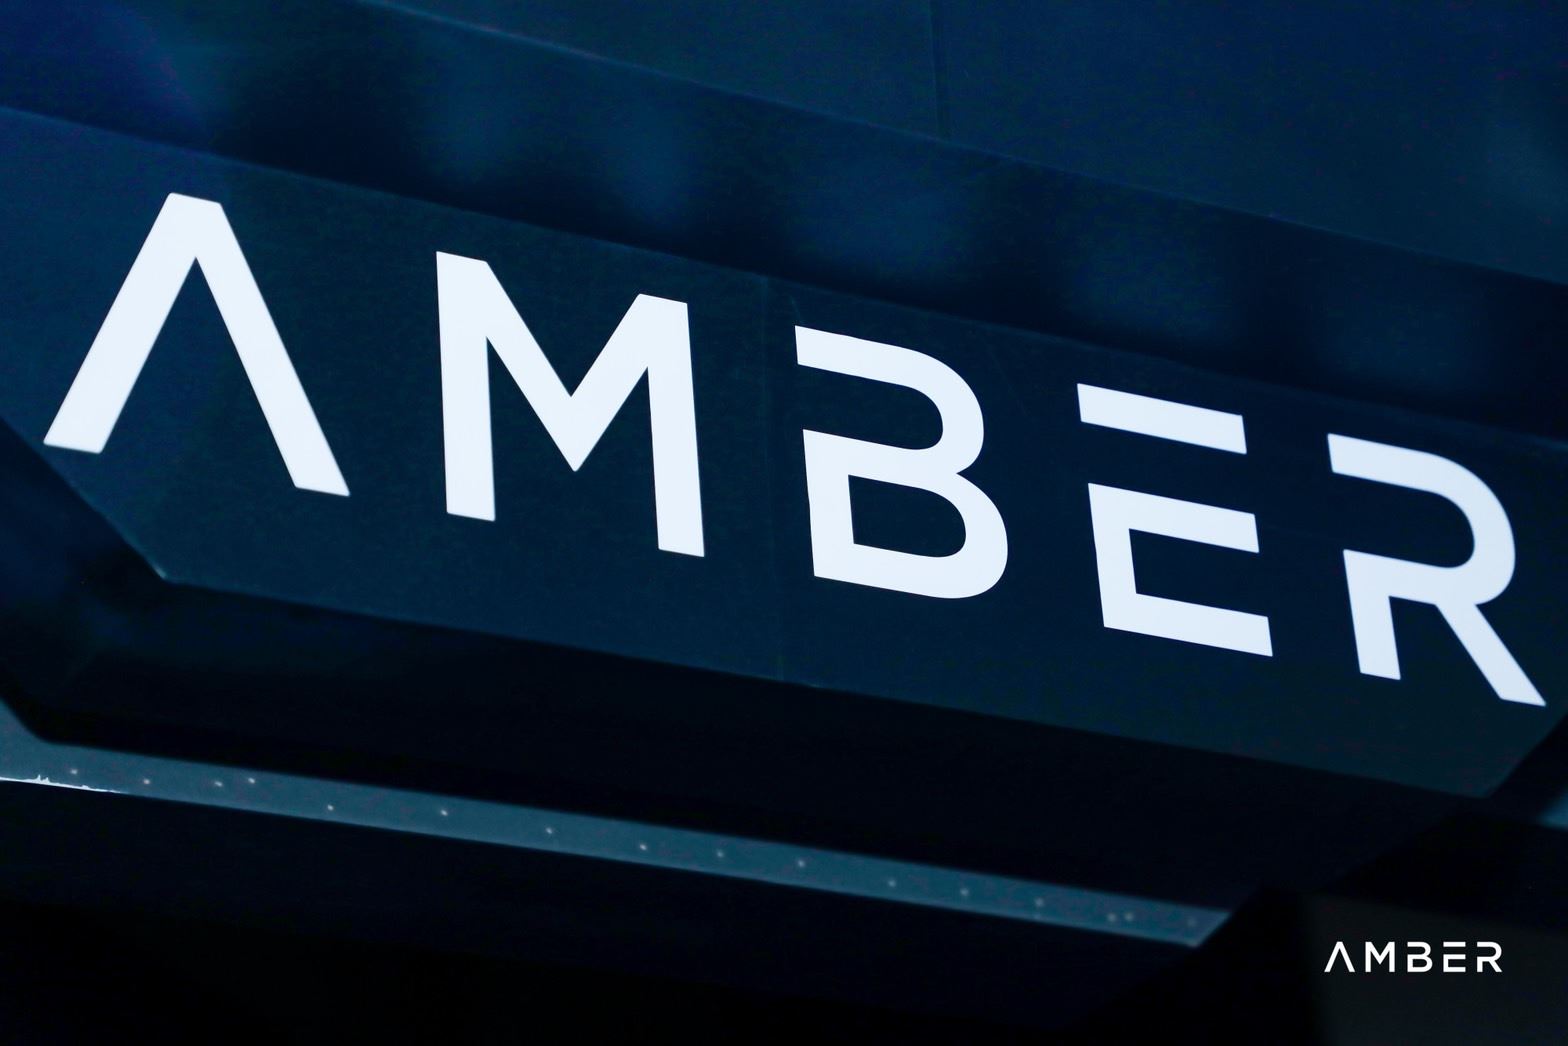  淡馬錫領投 Amber Group完成2億美金B+輪融資